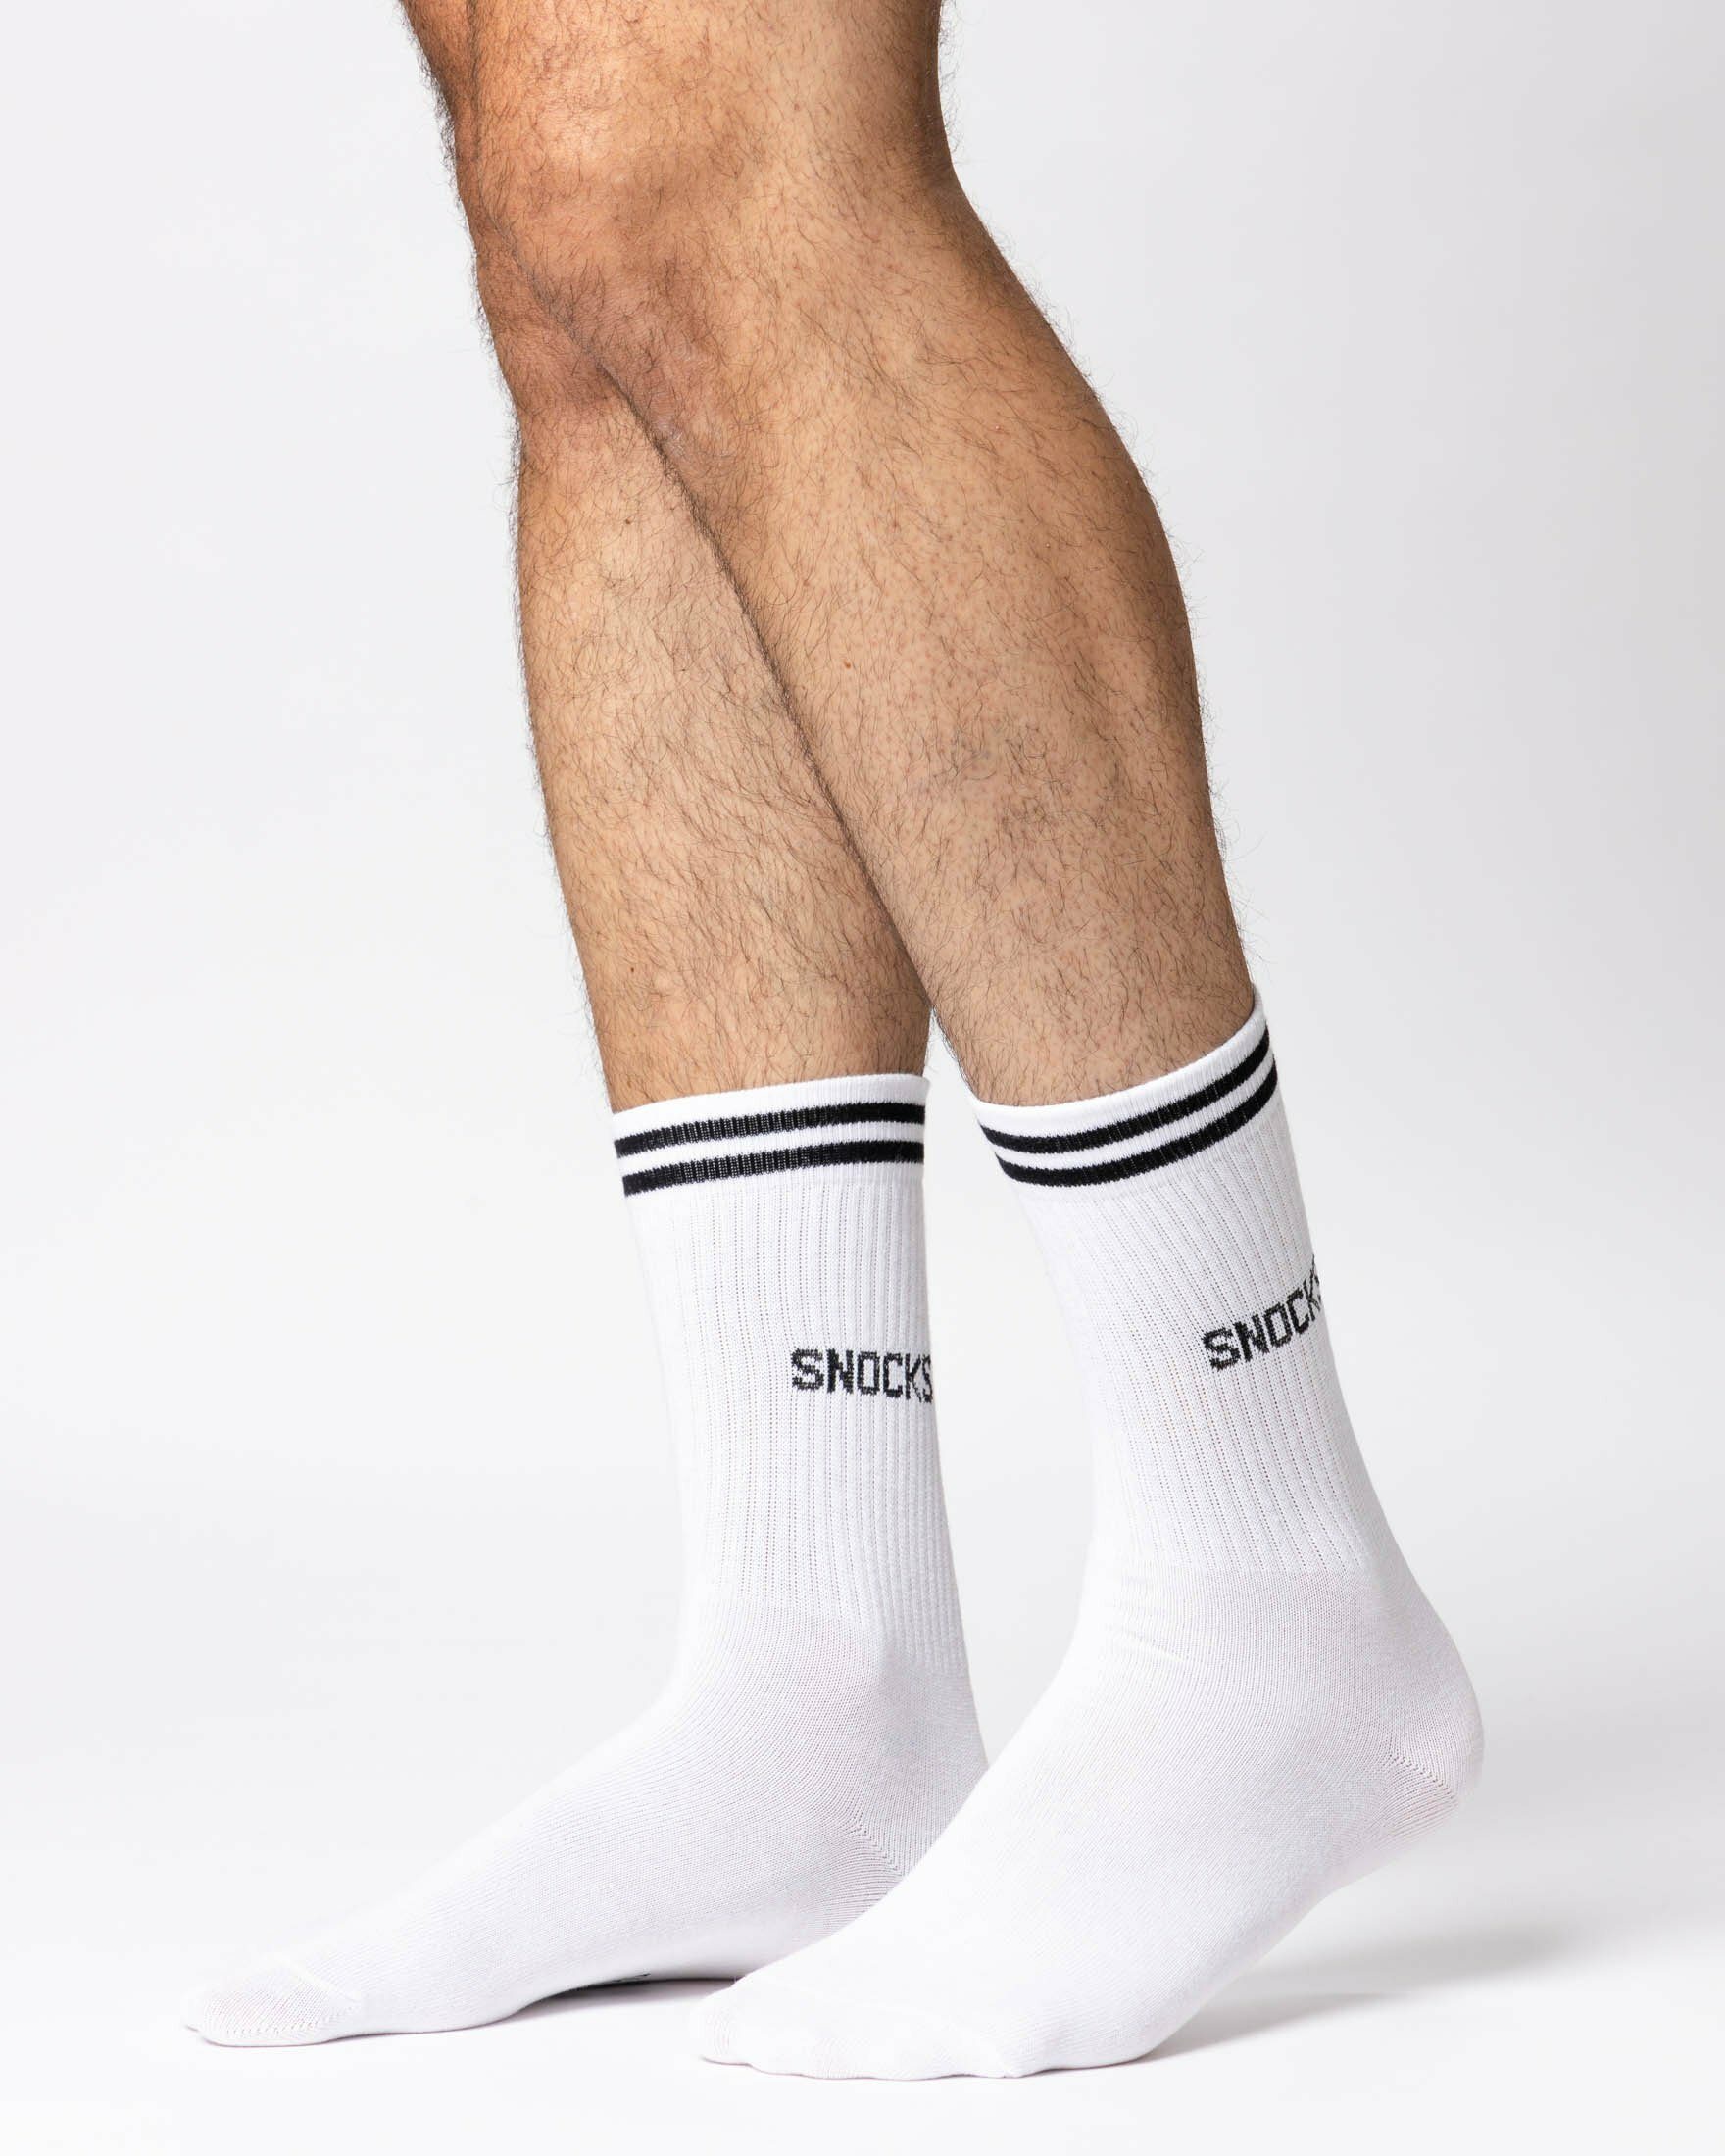 SNOCKS aus & Hohe (4-Paar) Tennissocken Streifen jedes Sportsocken Outfit stylish für Herren Schwarz-Weiß für Damen Bio-Baumwolle, mit